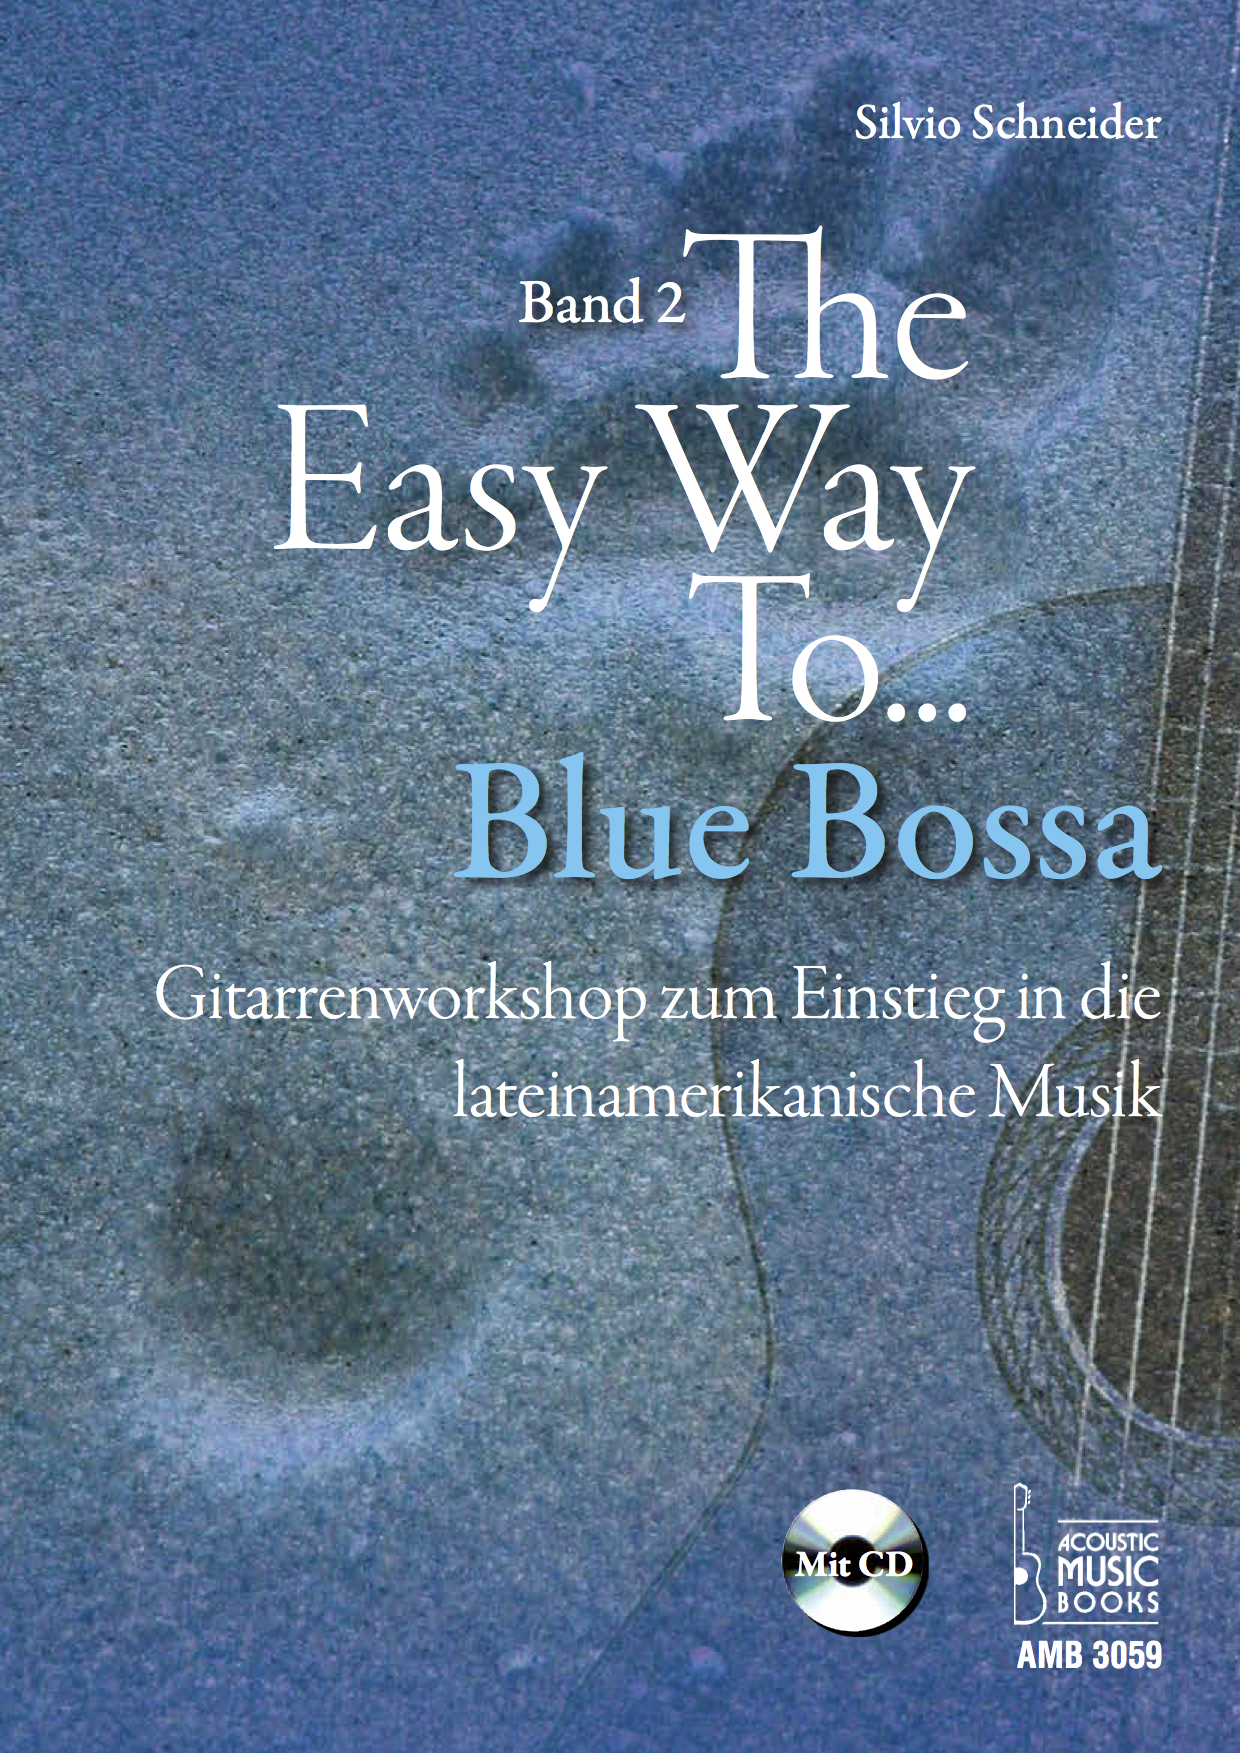 Nur_U1_Silvio_Schneider_The_Easy_Way_to_Blue_Bossa